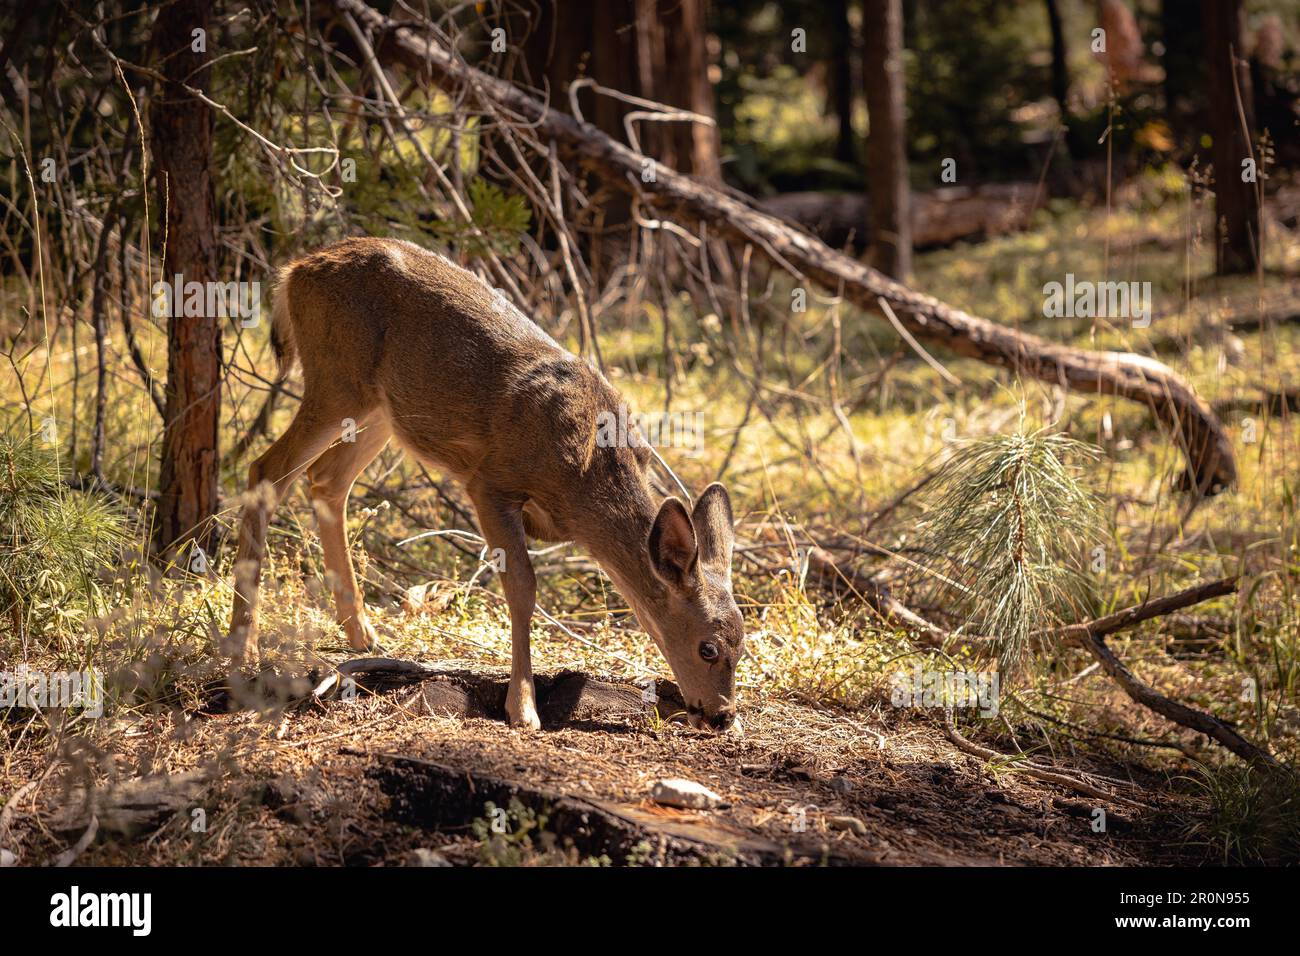 Un cervo dalla coda bianca in una zona boschiva, la testa si è piegata verso il basso Foto Stock